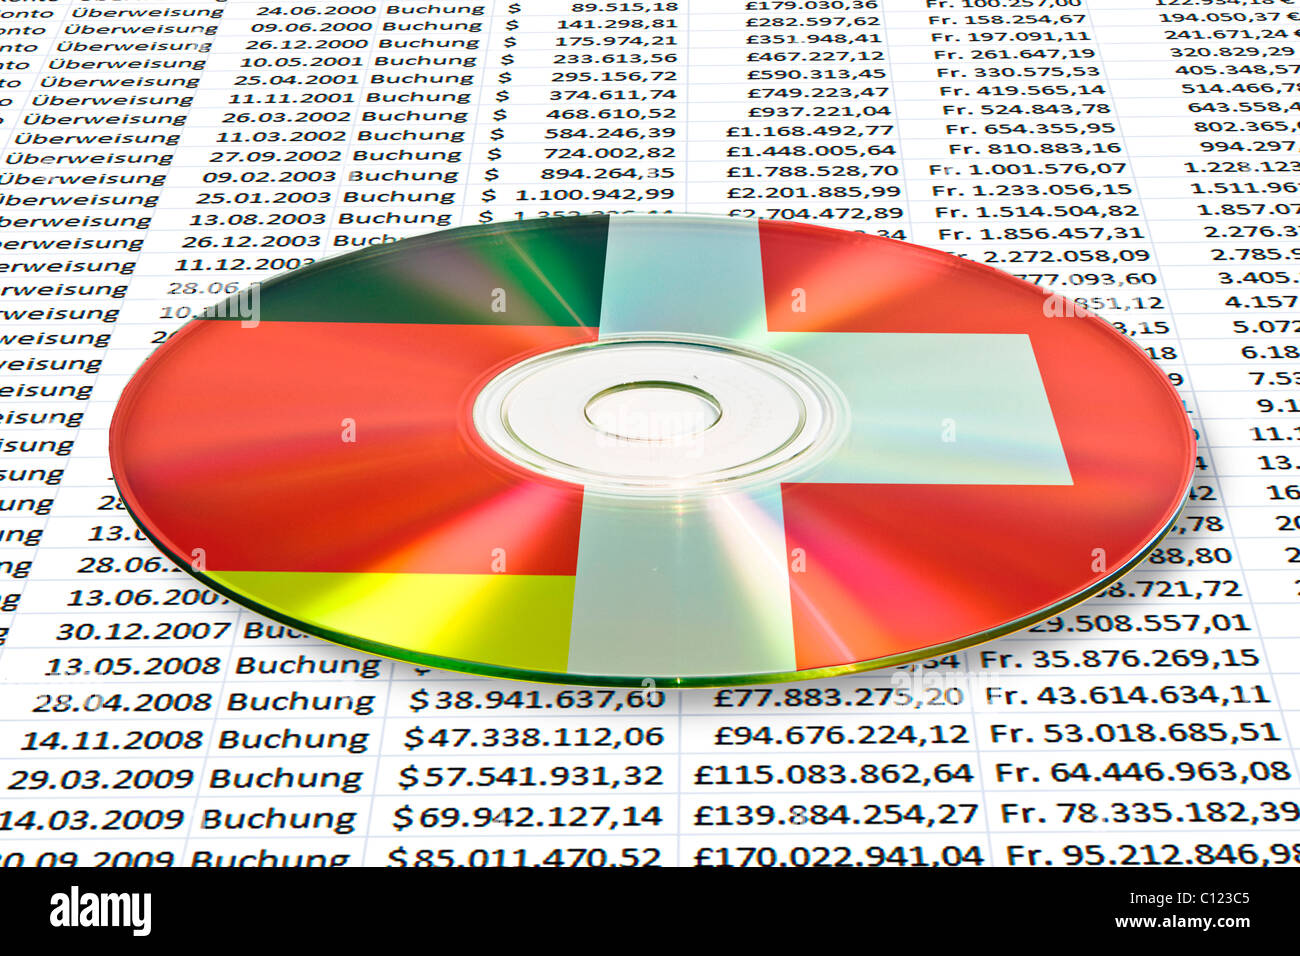 Immagine simbolica per lo scambio di dati e informazioni di account su CD, DVD, Germania - Svizzera Foto Stock